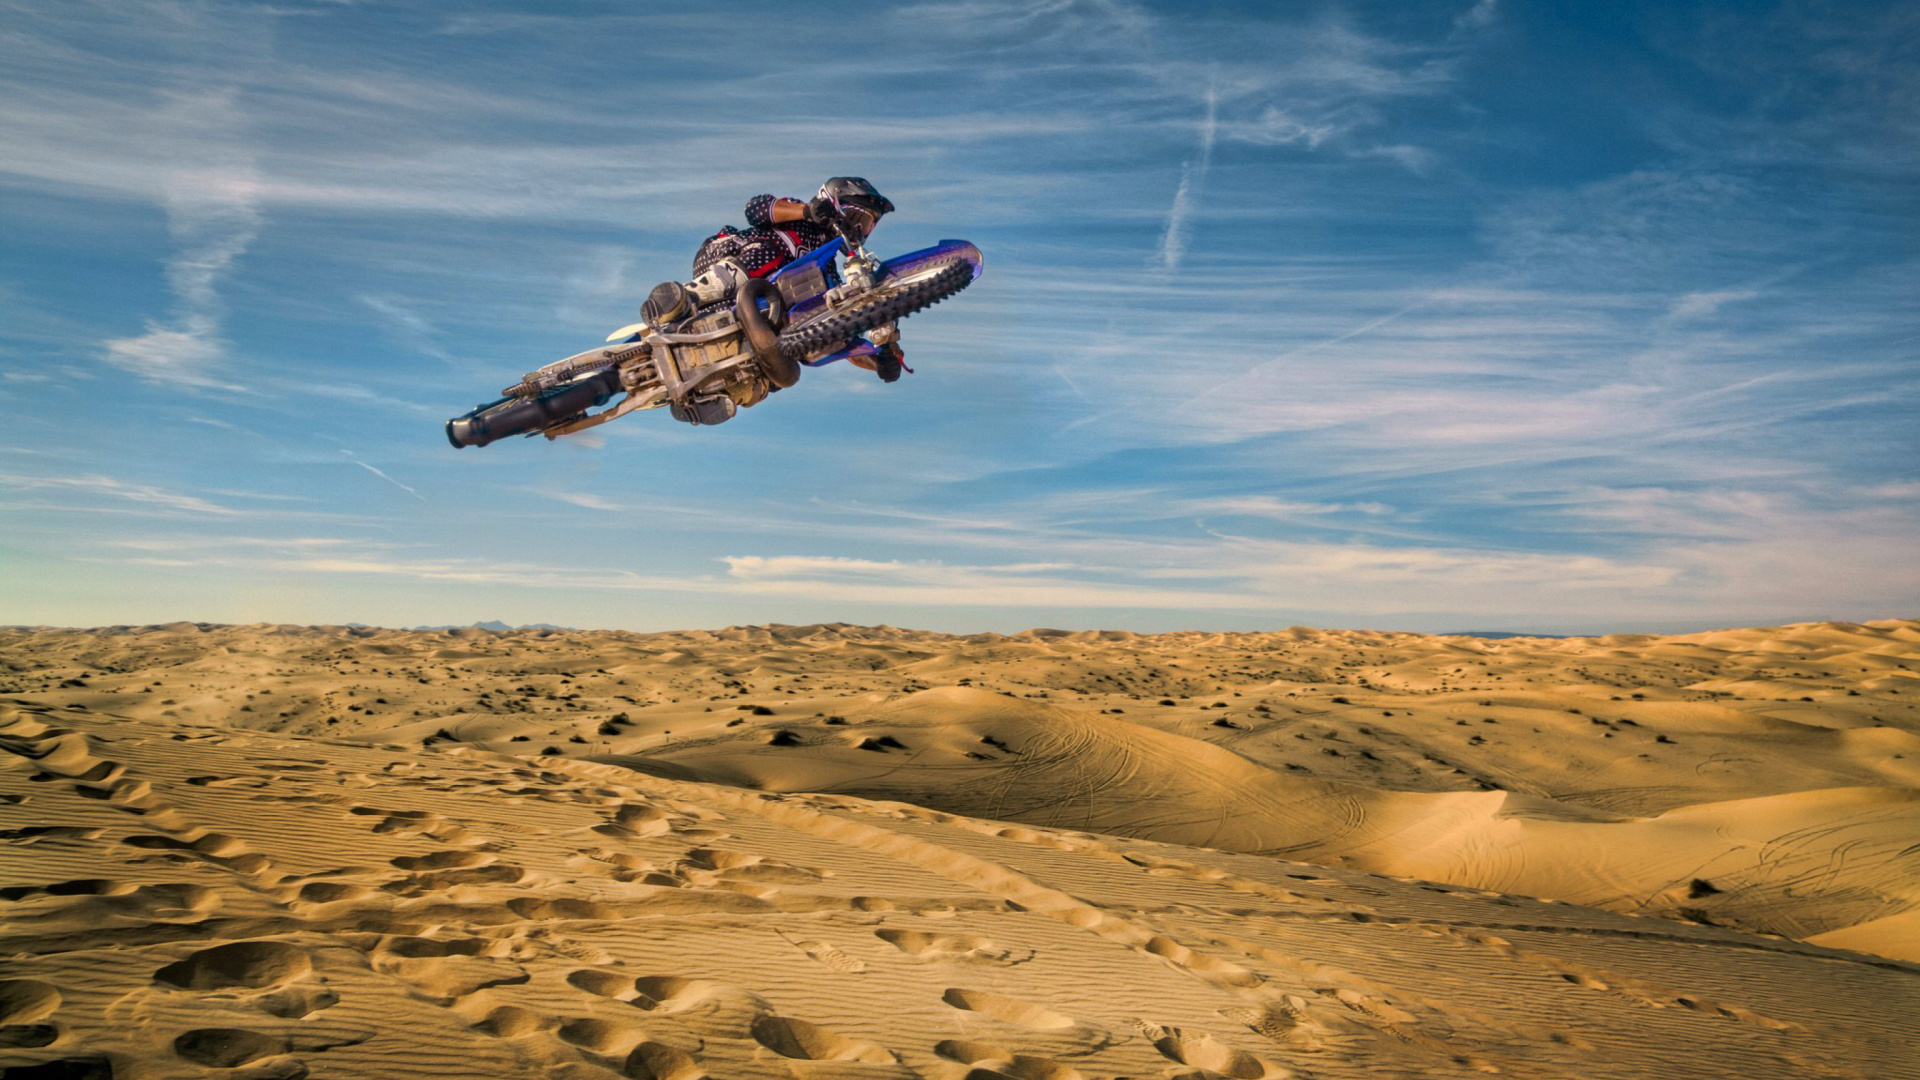 Fondo de pantalla Motocross in Desert 1920x1080